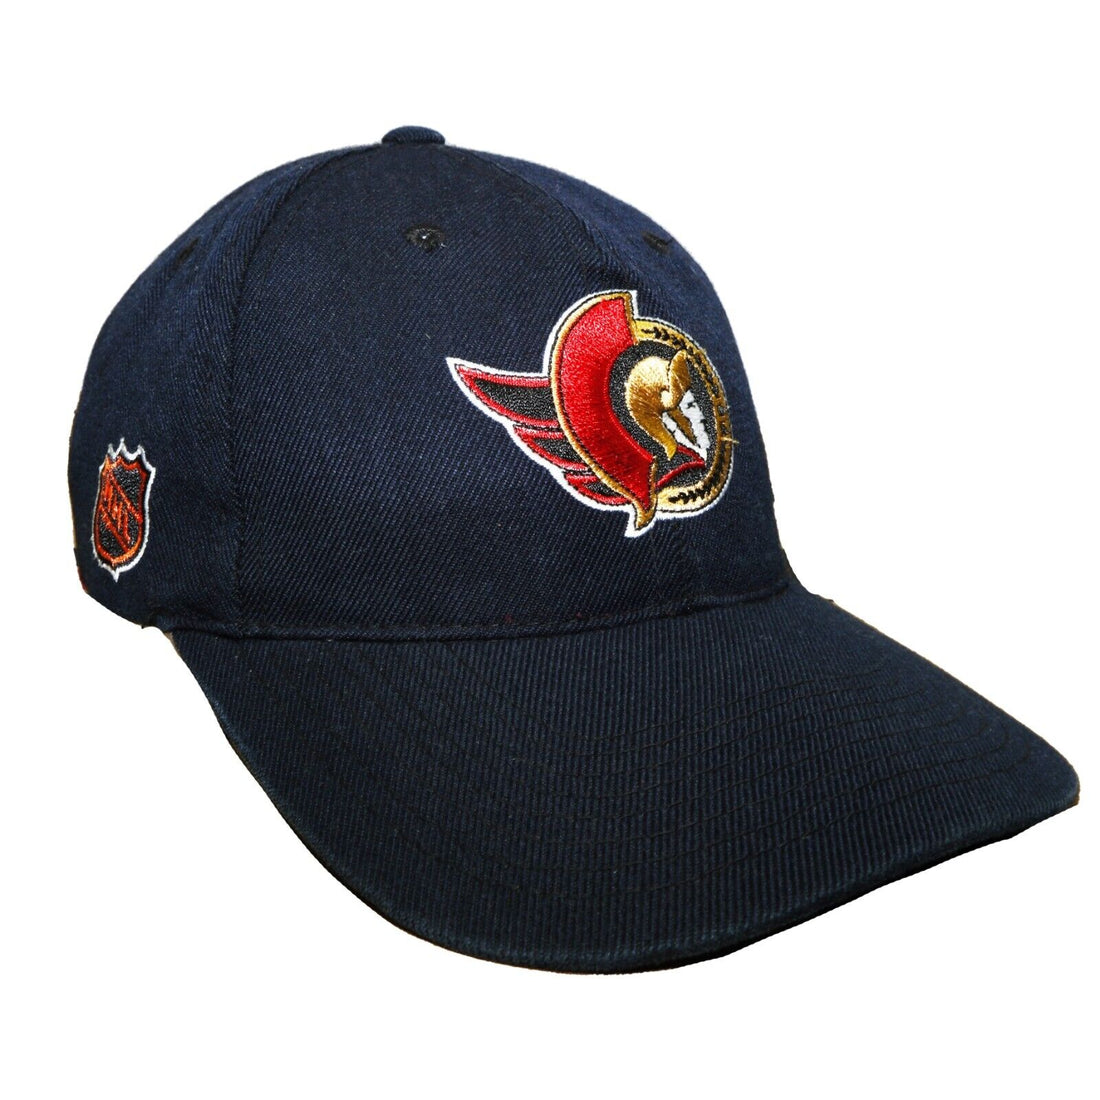 Vintage Ottawa Senators Wool Sports Specialties Snapback Hat Cap OSFA 90s NHL